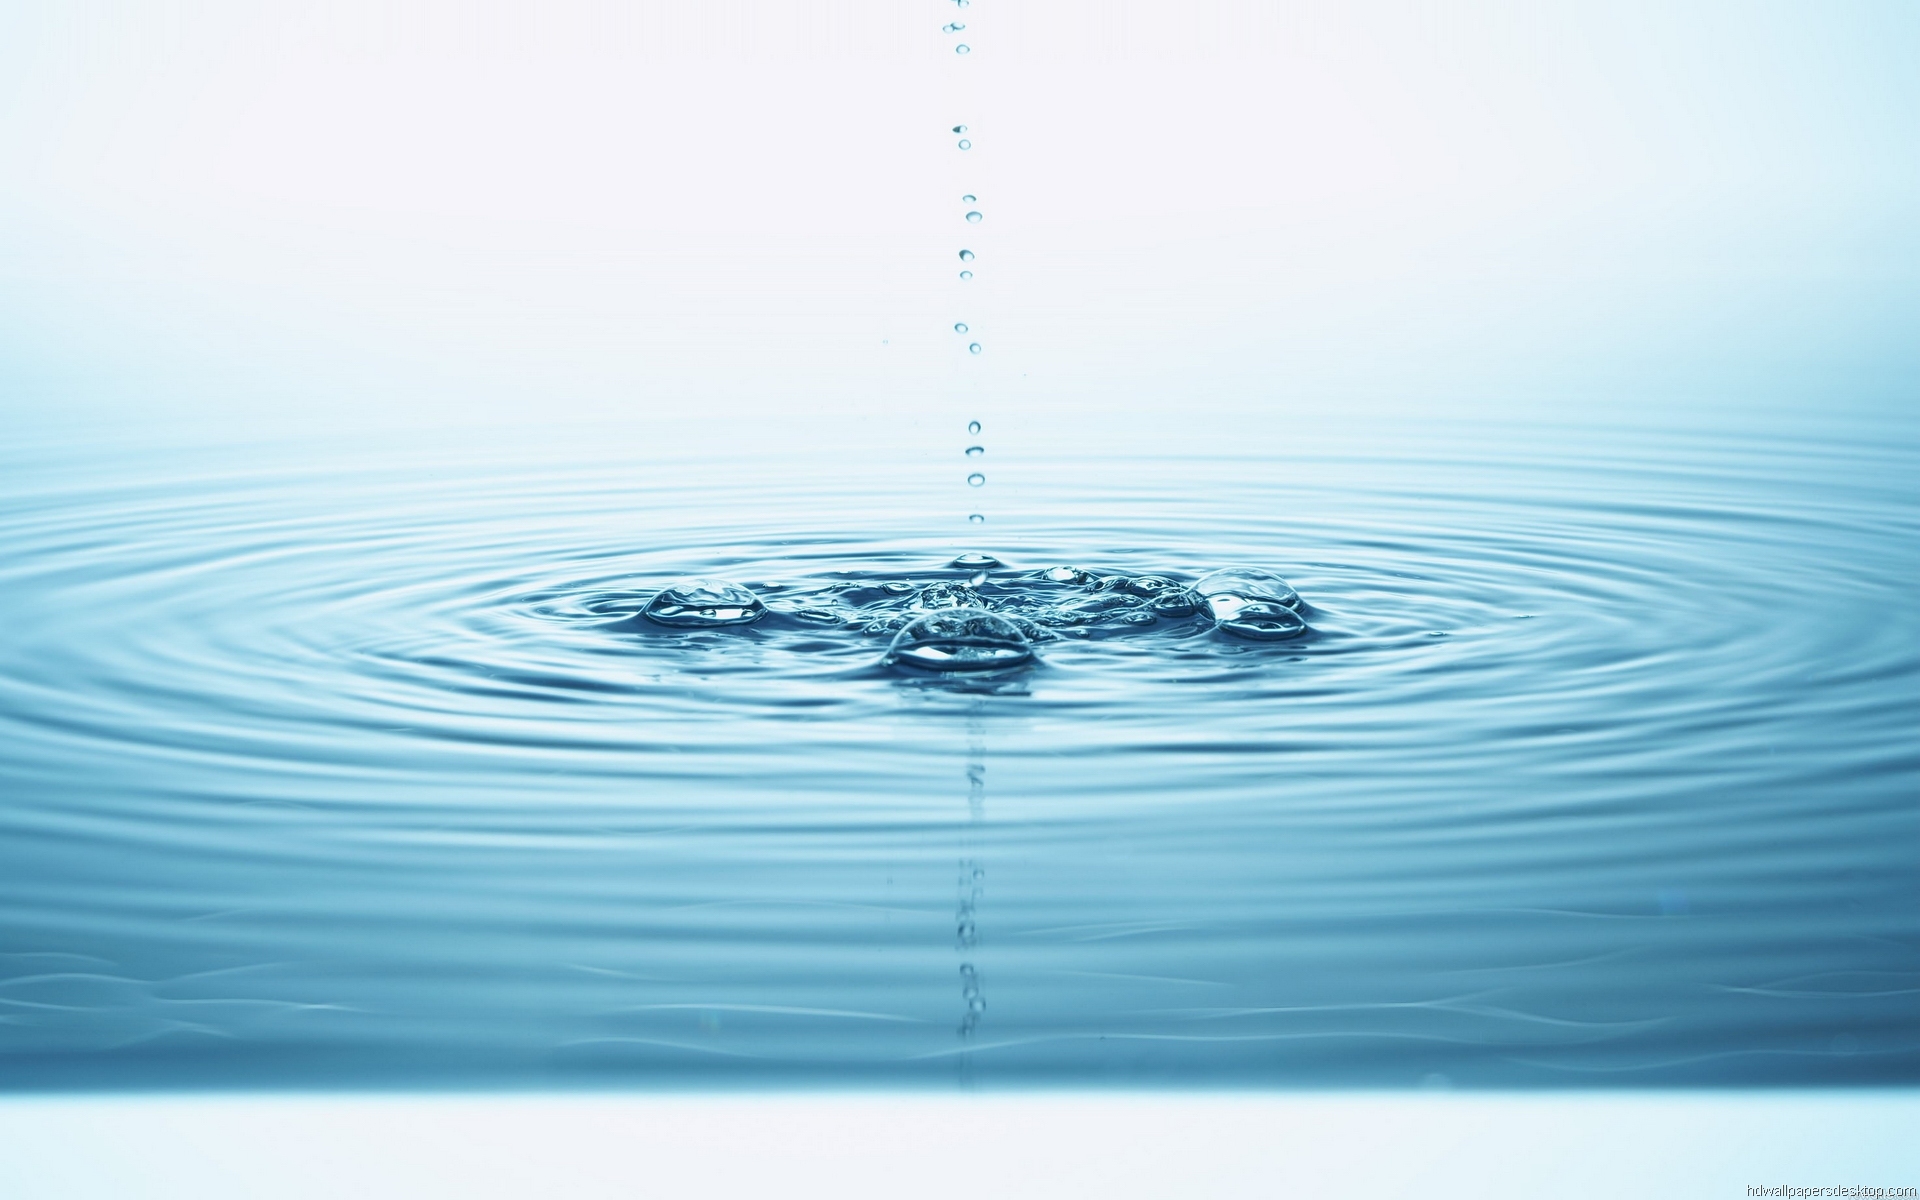 water wallpaper hd download,drop,water resources,water,blue,liquid